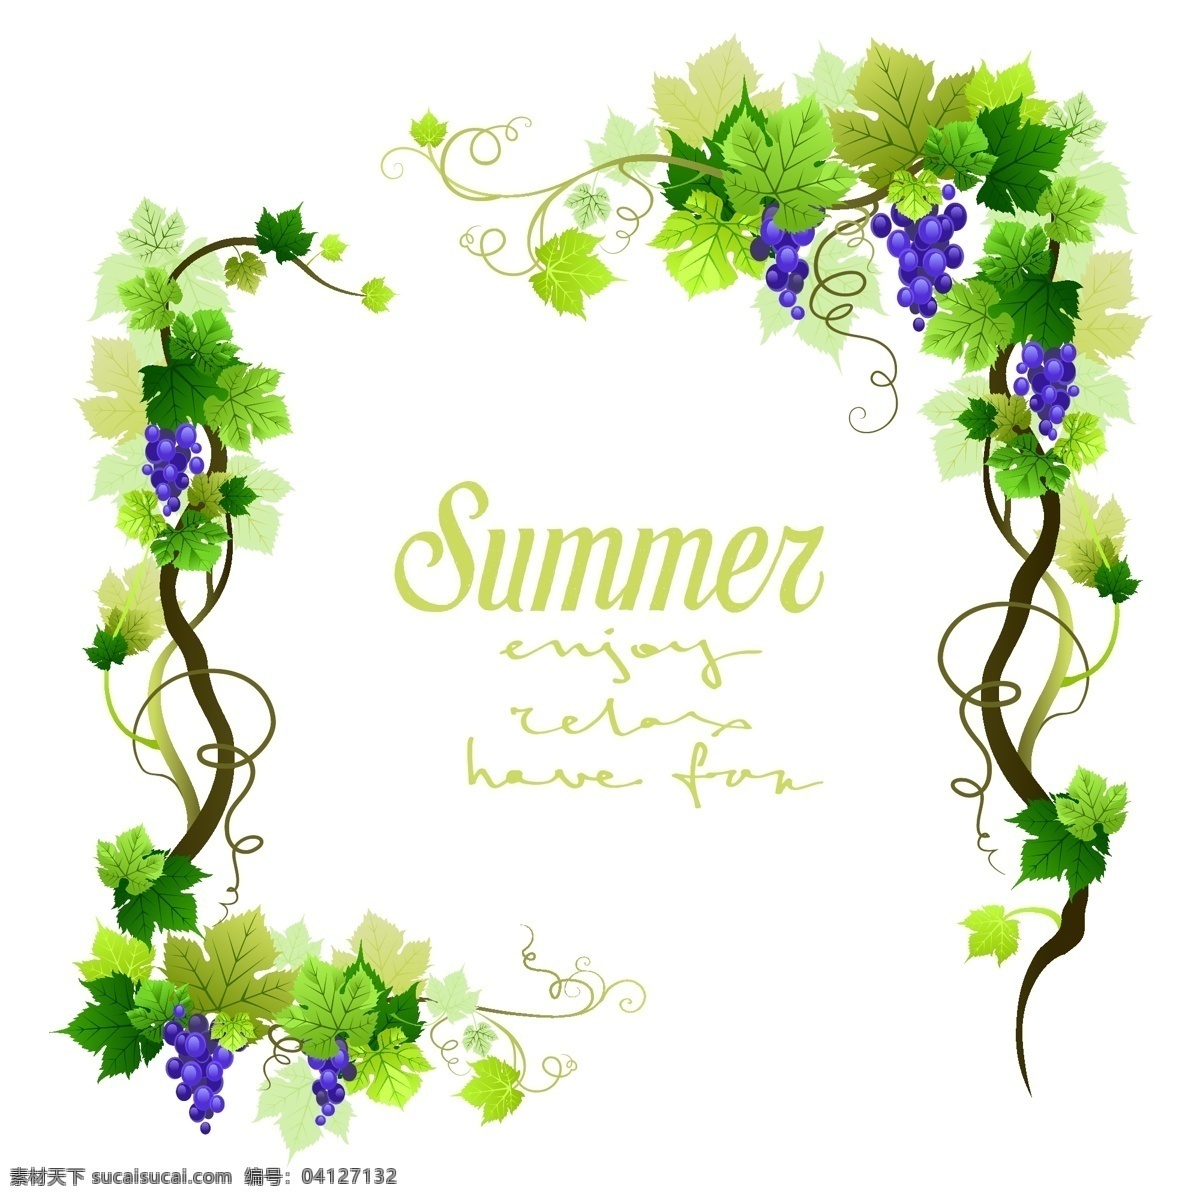 夏季 葡萄藤 边框 葡萄 彩绘 矢量图 格式 矢量 高清图片